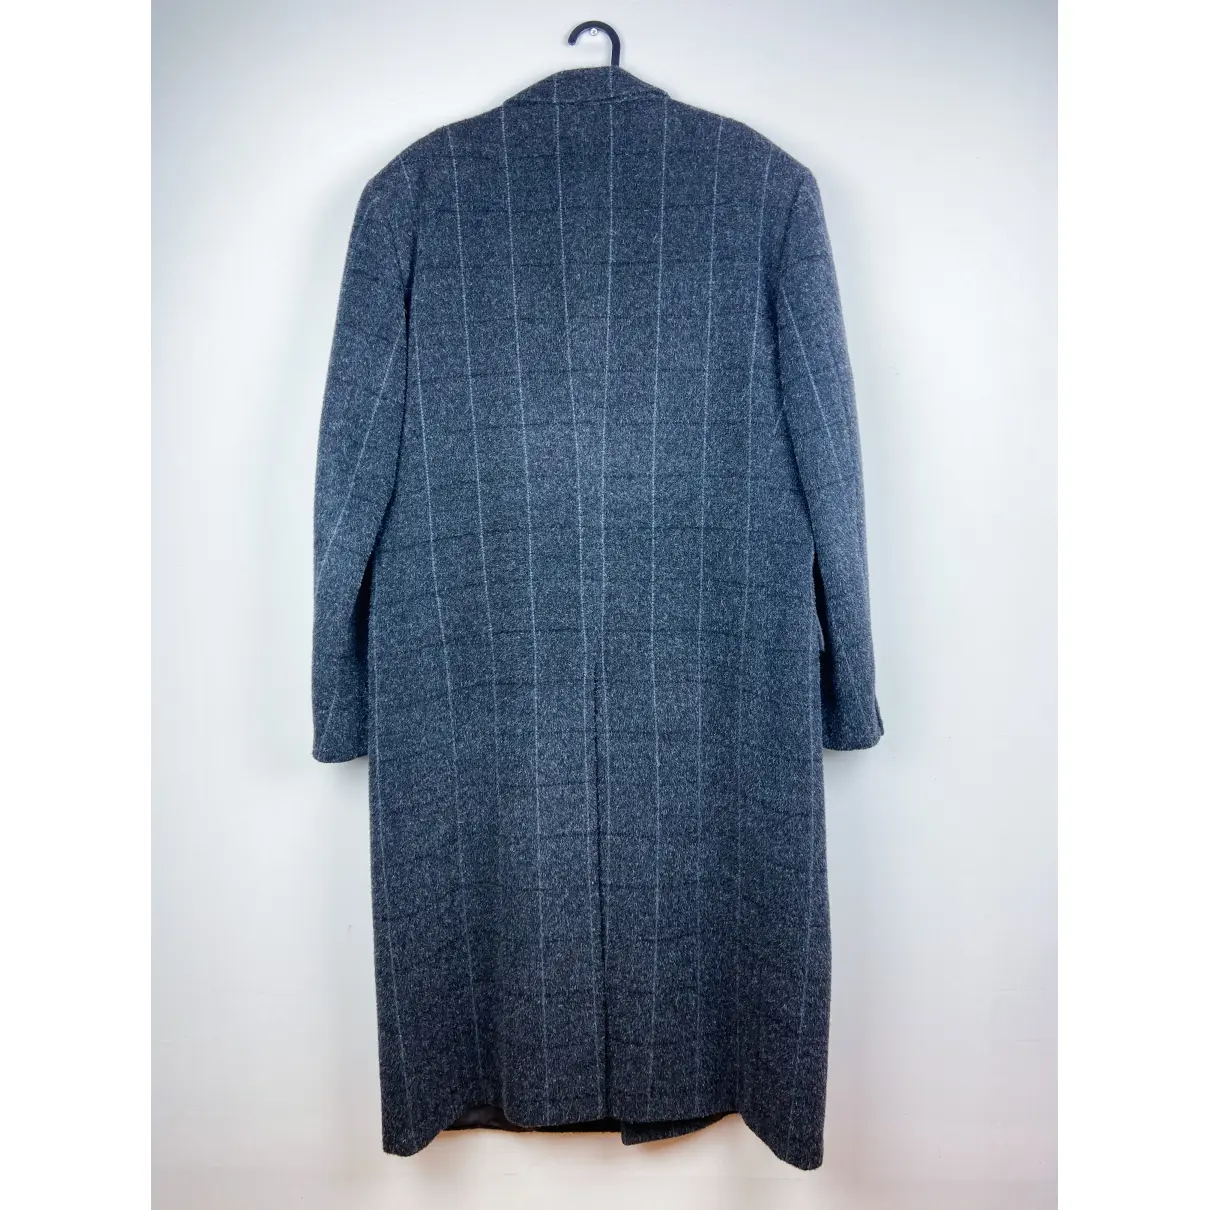 Buy Valentino Garavani Wool coat online - Vintage